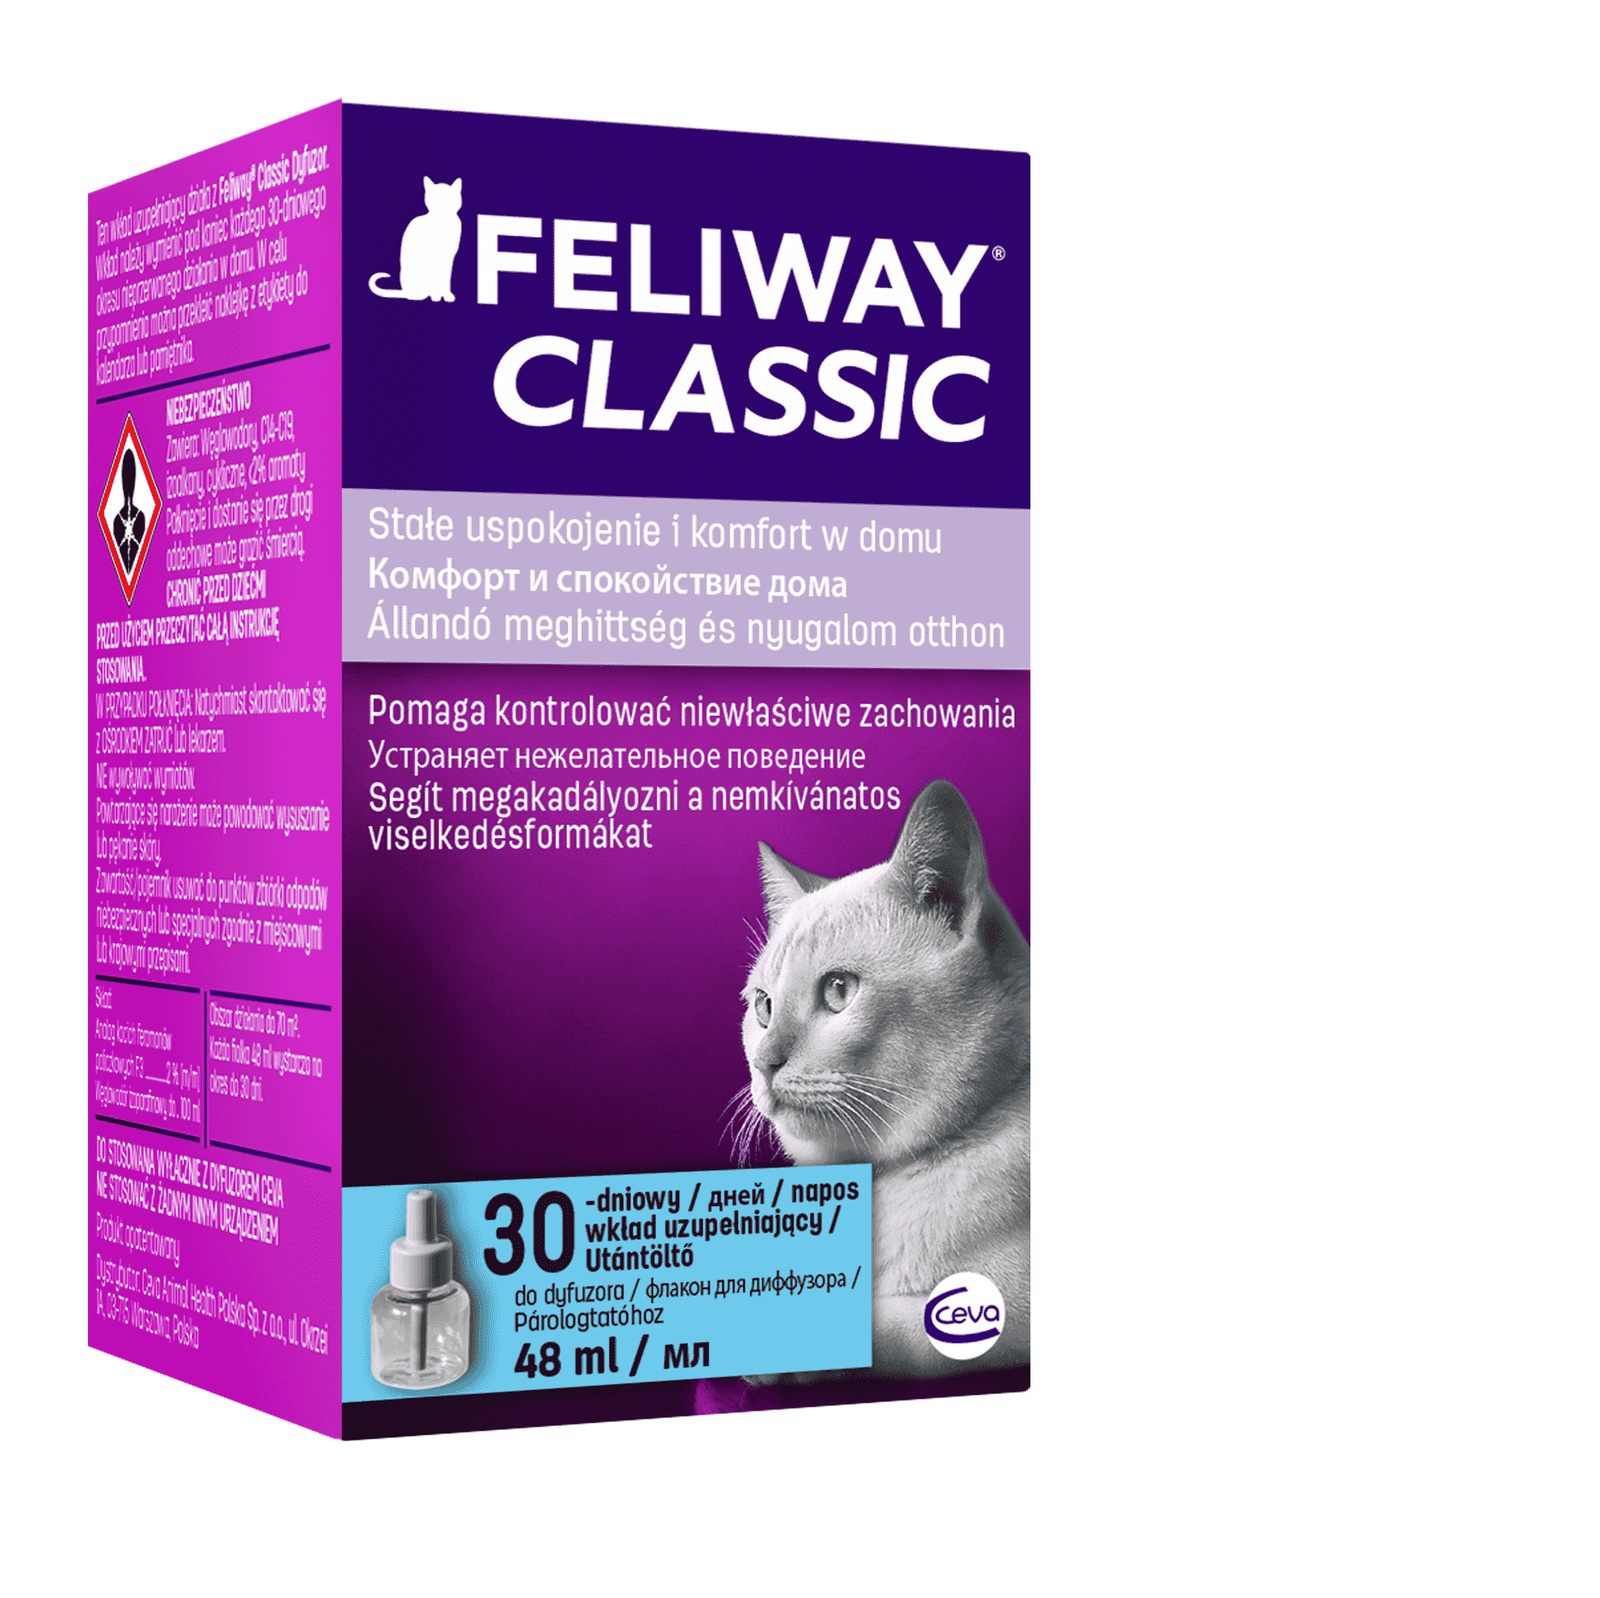 Ceva Ceva феромоны Феливей Классик для кошек сменный блок для коррекции поведения (48 мл) ceva feliway classic диффузор флакон для коррекции поведения кошек 48 мл